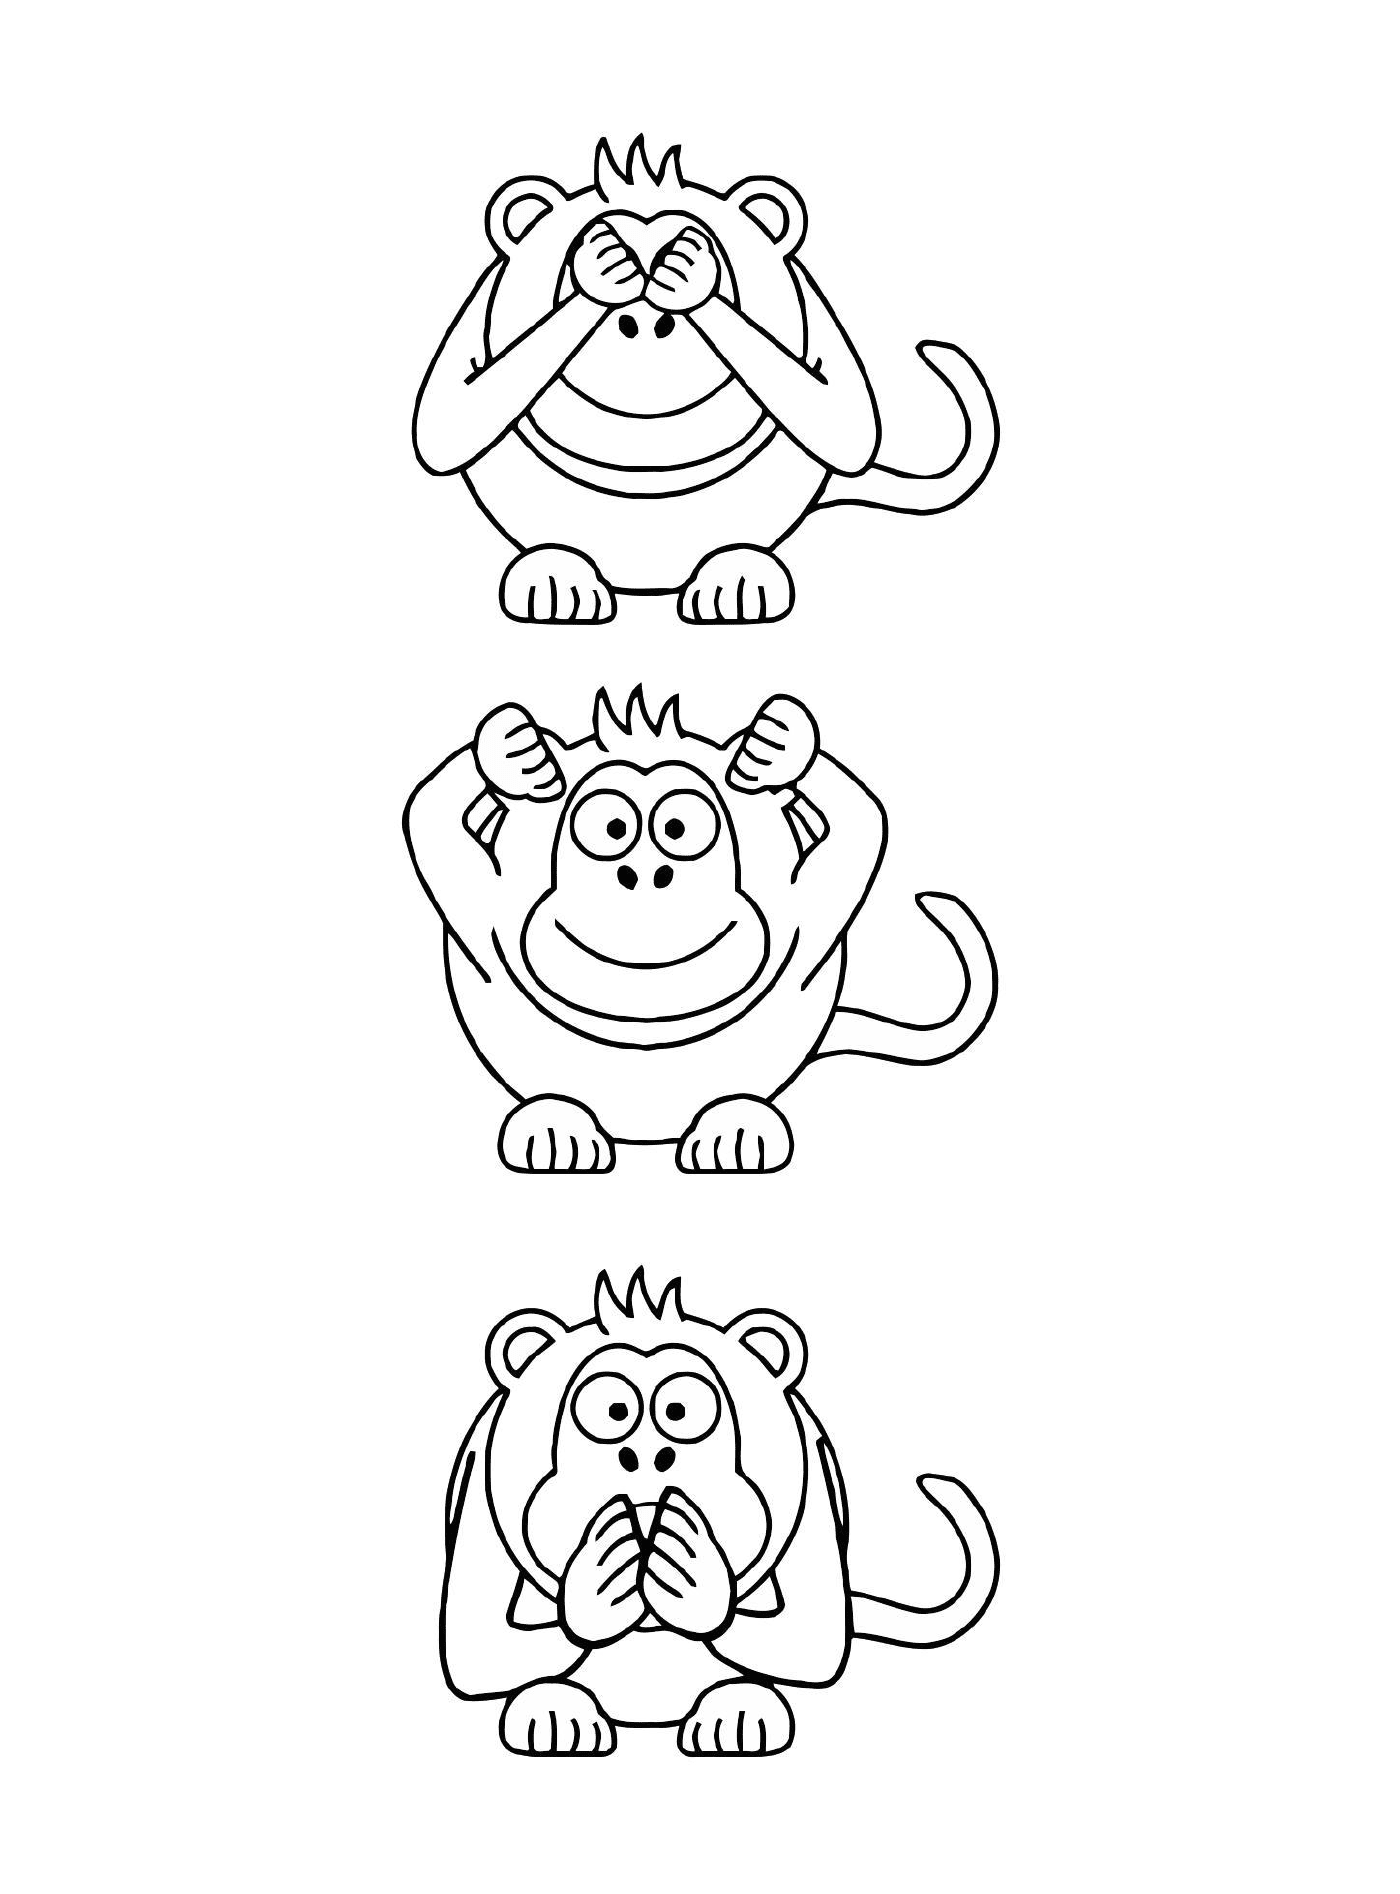   Trois singes avec expressions différentes 